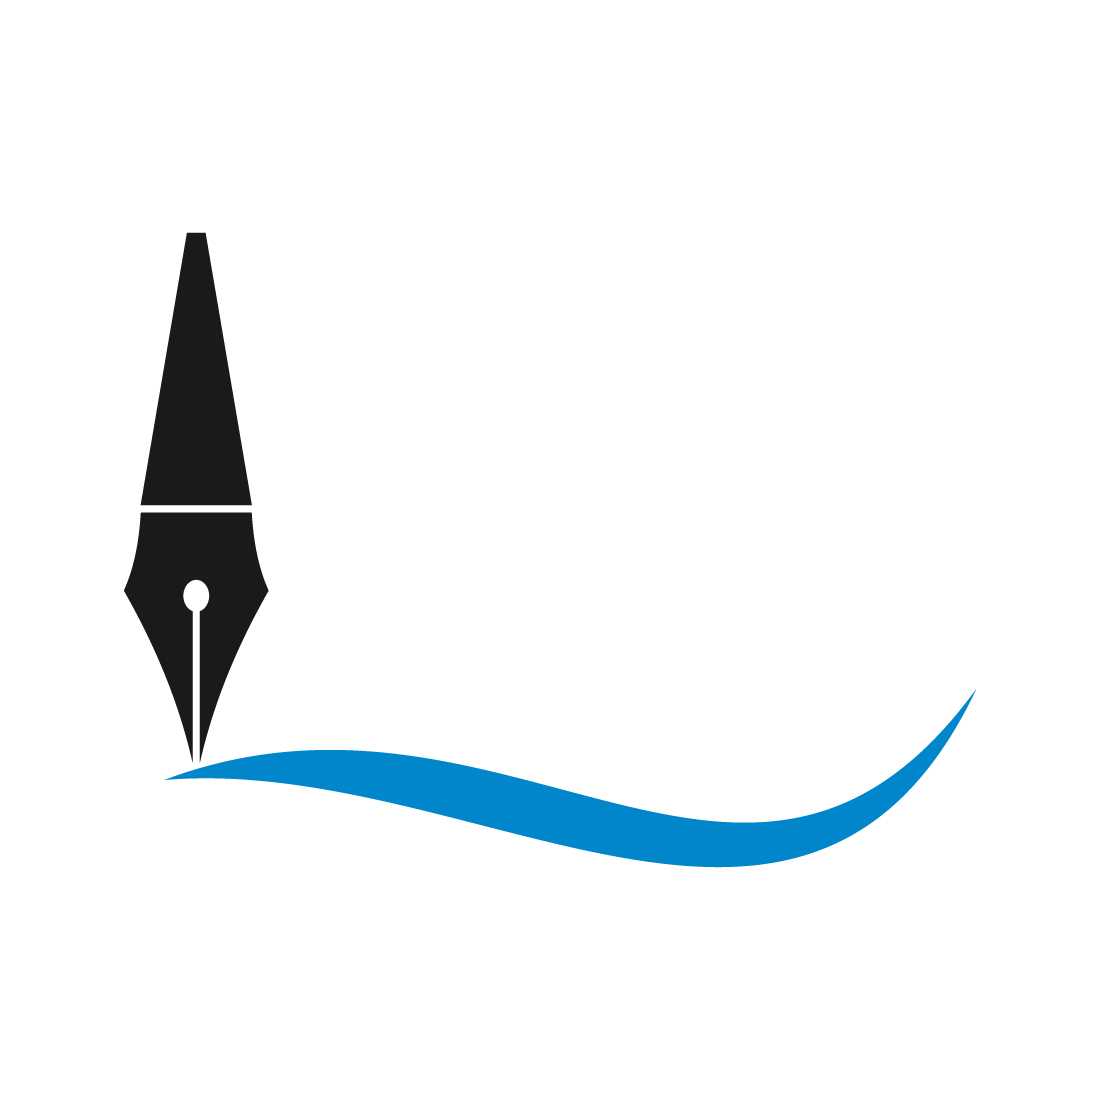 Fountain writing pen logo design, Vector design concept cover image.